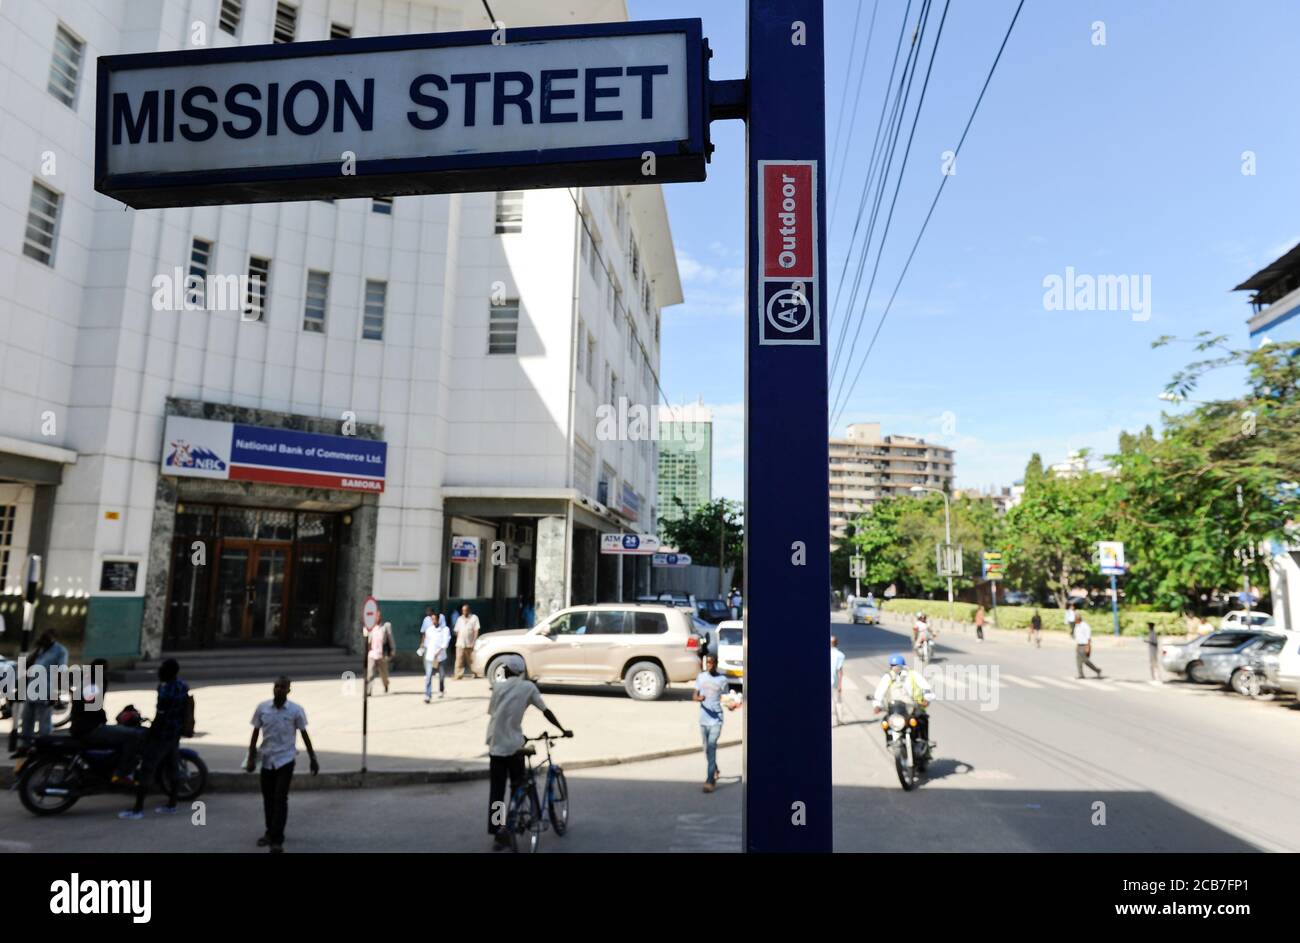 Tanzania Dar es Salaam, centro città, Mission Street / TANSANIA Dar es Salam, Stadtzentrum Mission Strasse Foto Stock